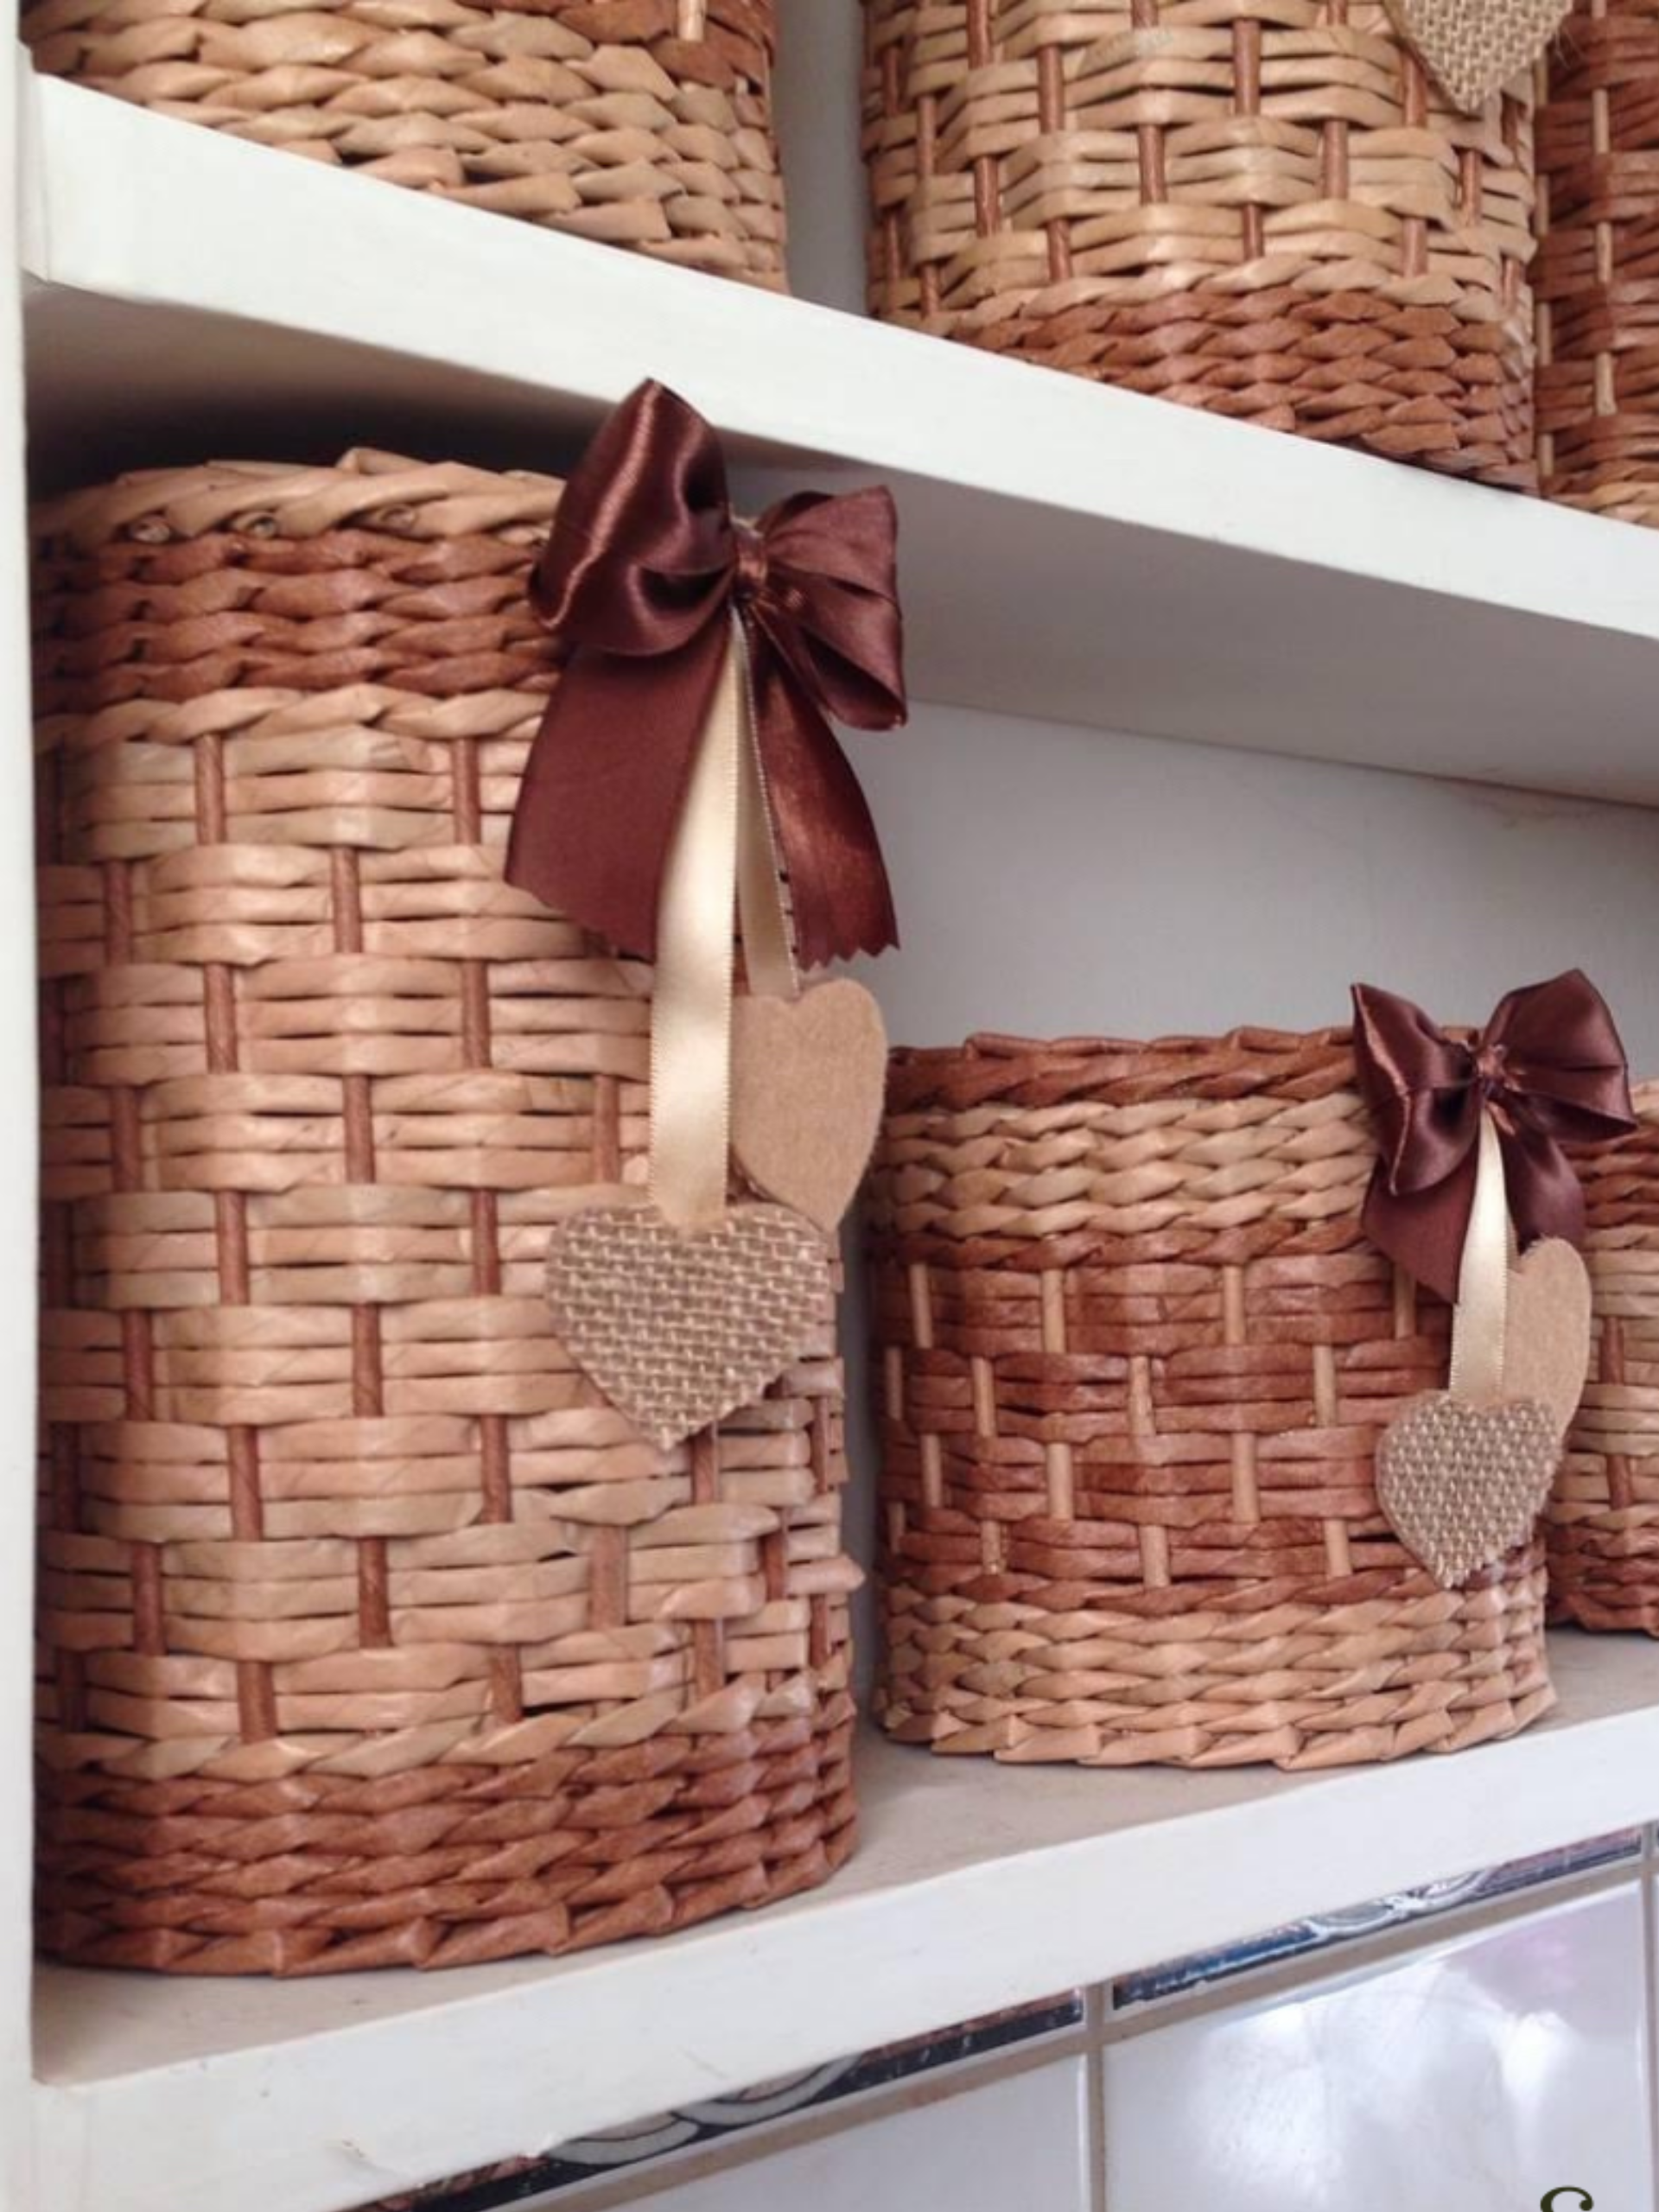 Mensola con cesti fatti a mano realizzati con la tecnica dell'intreccio e decorati con fiocco in tessuto